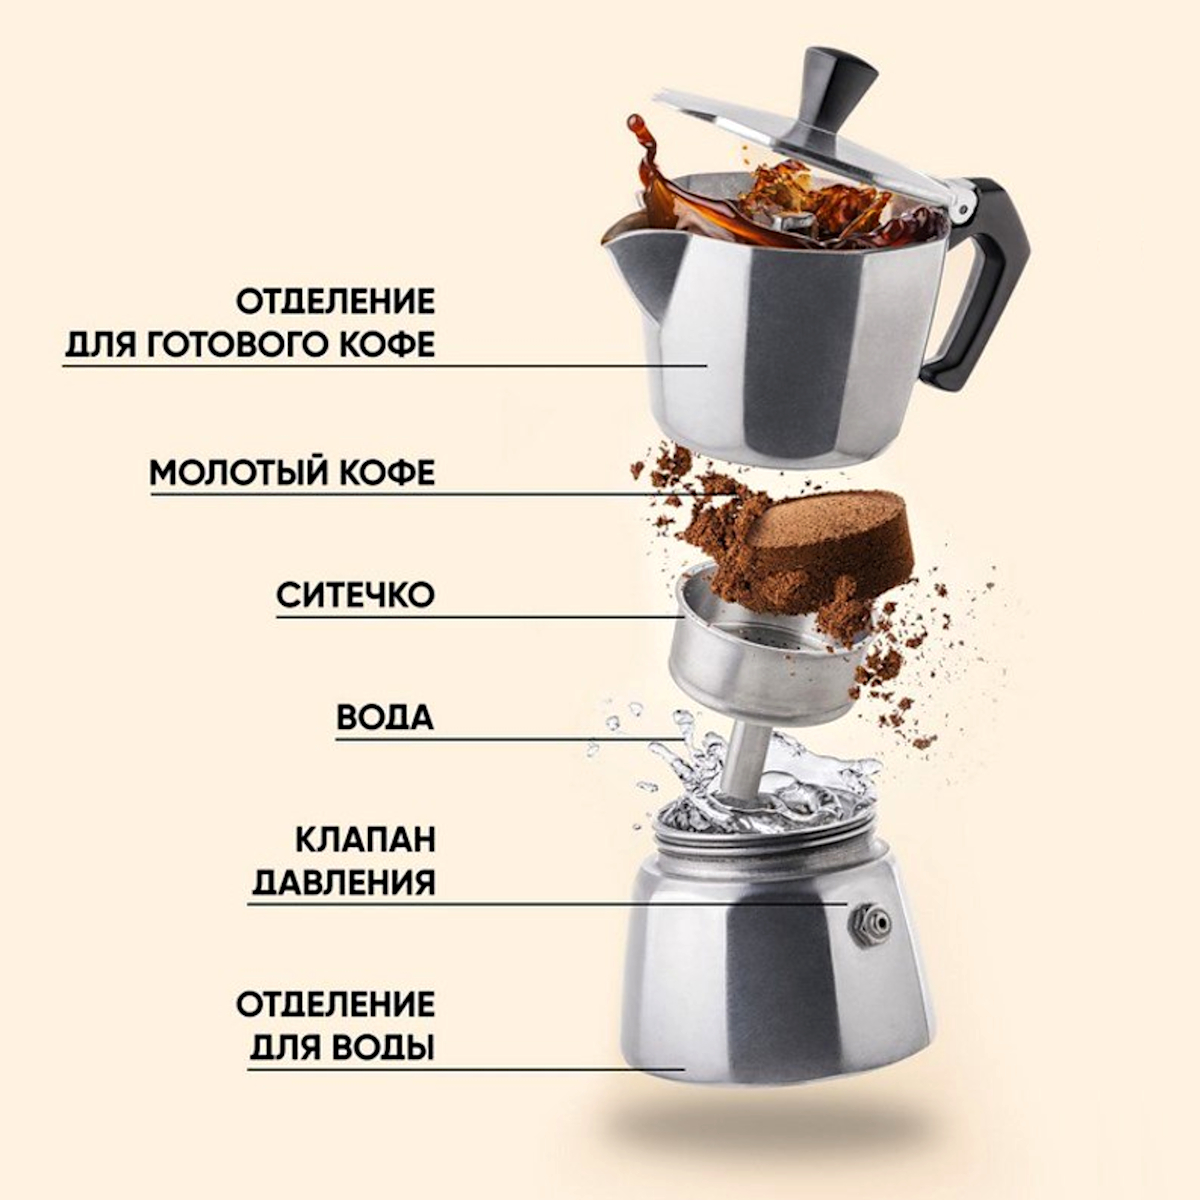 Гейзерная кофеварка принцип приготовления кофе. Как заваривать кофе в гейзерной кофеварке. Кофеварка гейзерного типа принцип работы. Гейзерная кофеварка составные части.